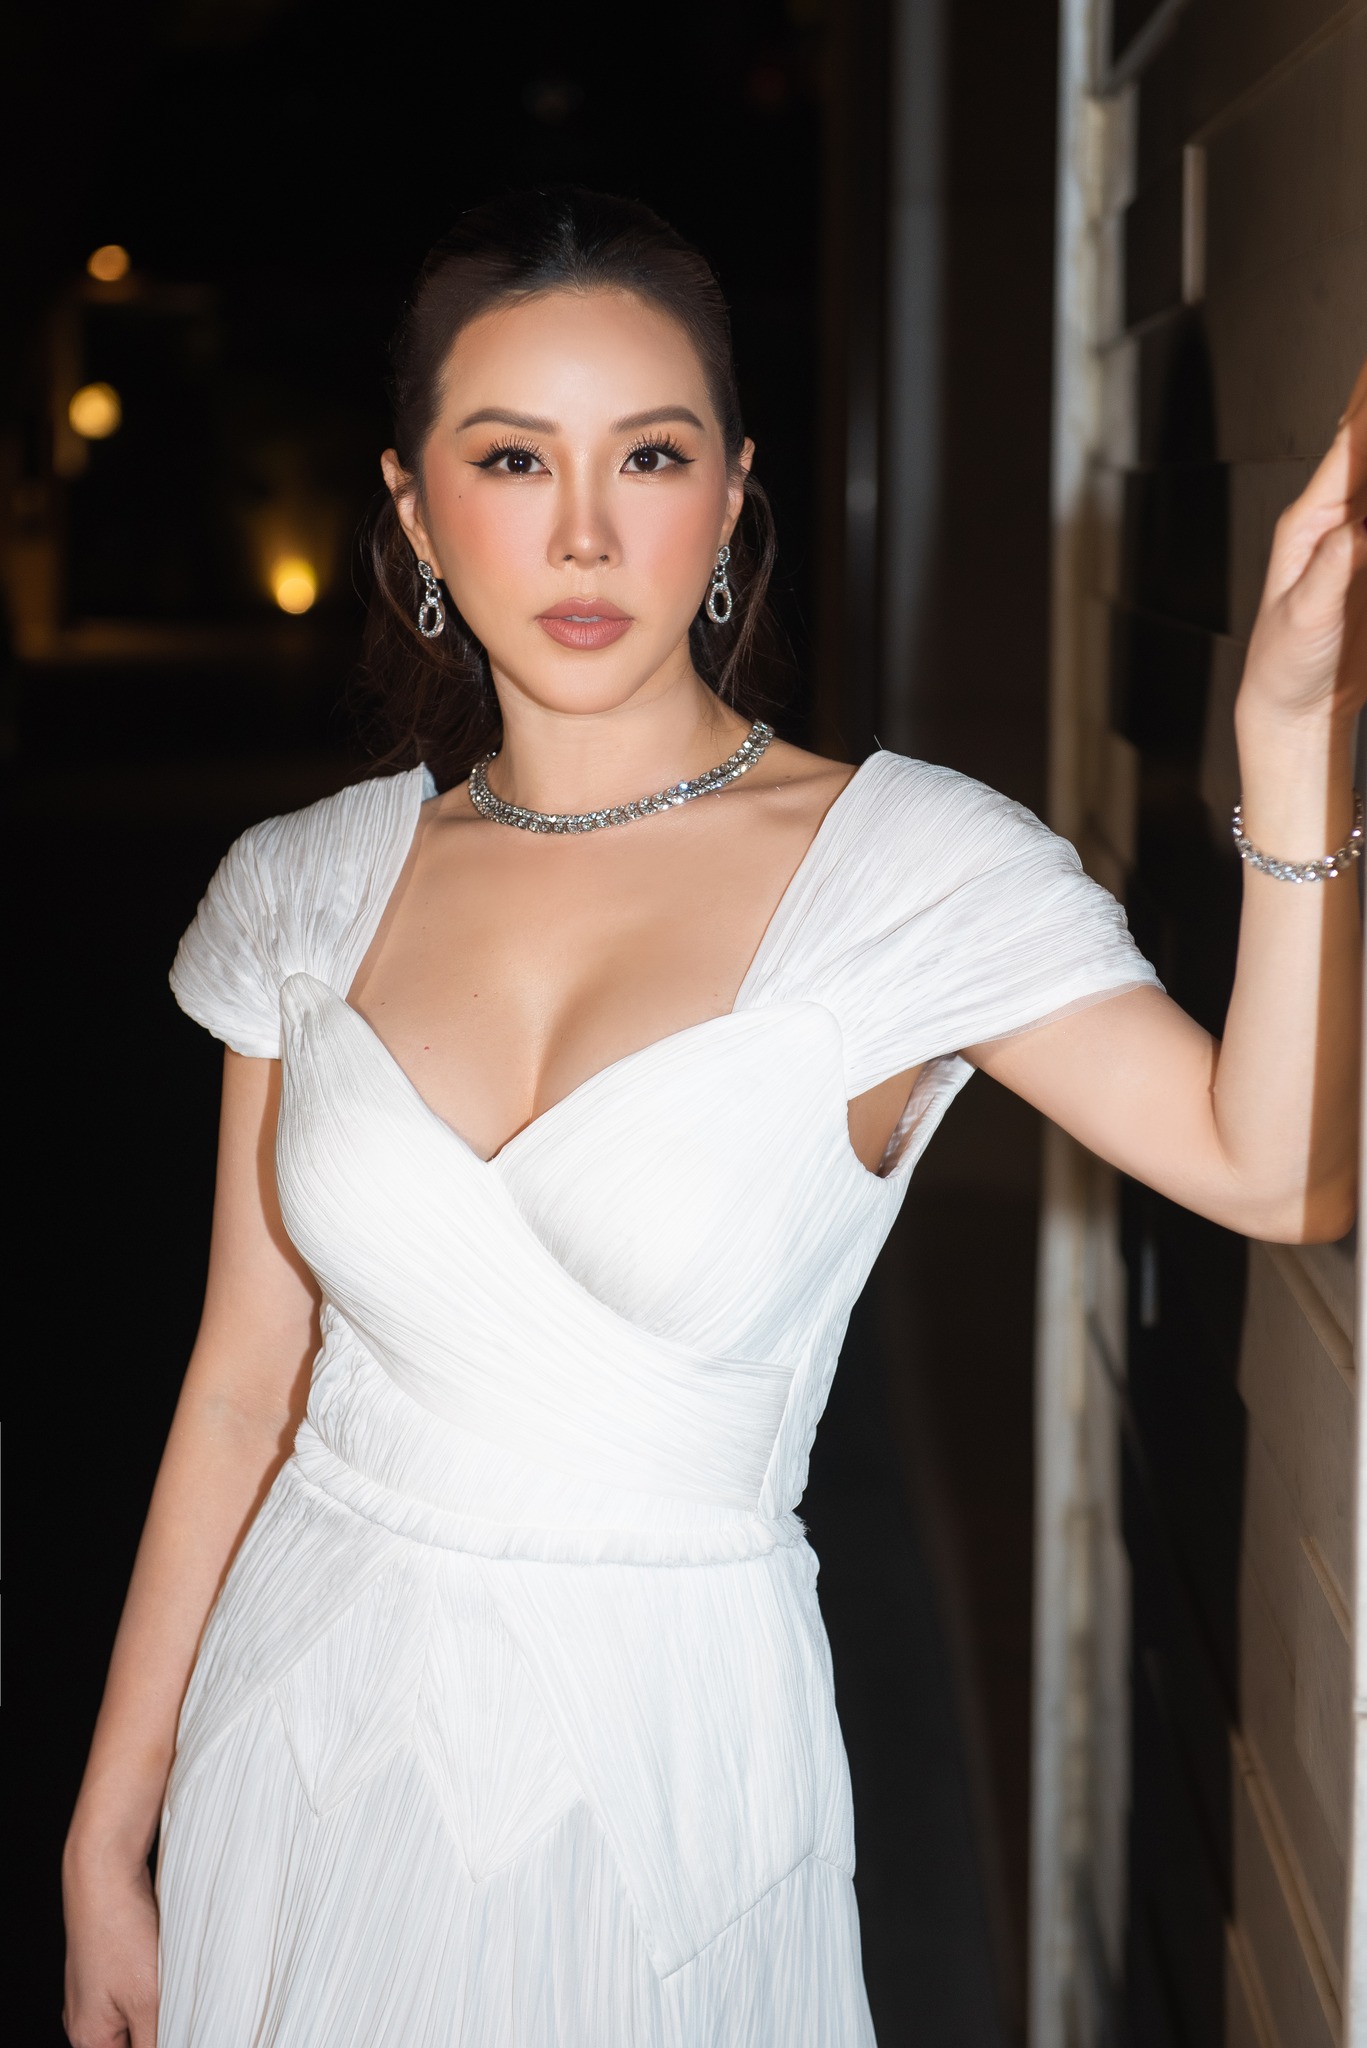 Nhan sắc gợi cảm tuổi U50 của "Hoa hậu thơm nhất showbiz Việt", sống giàu sang trong dinh thự như lâu đài